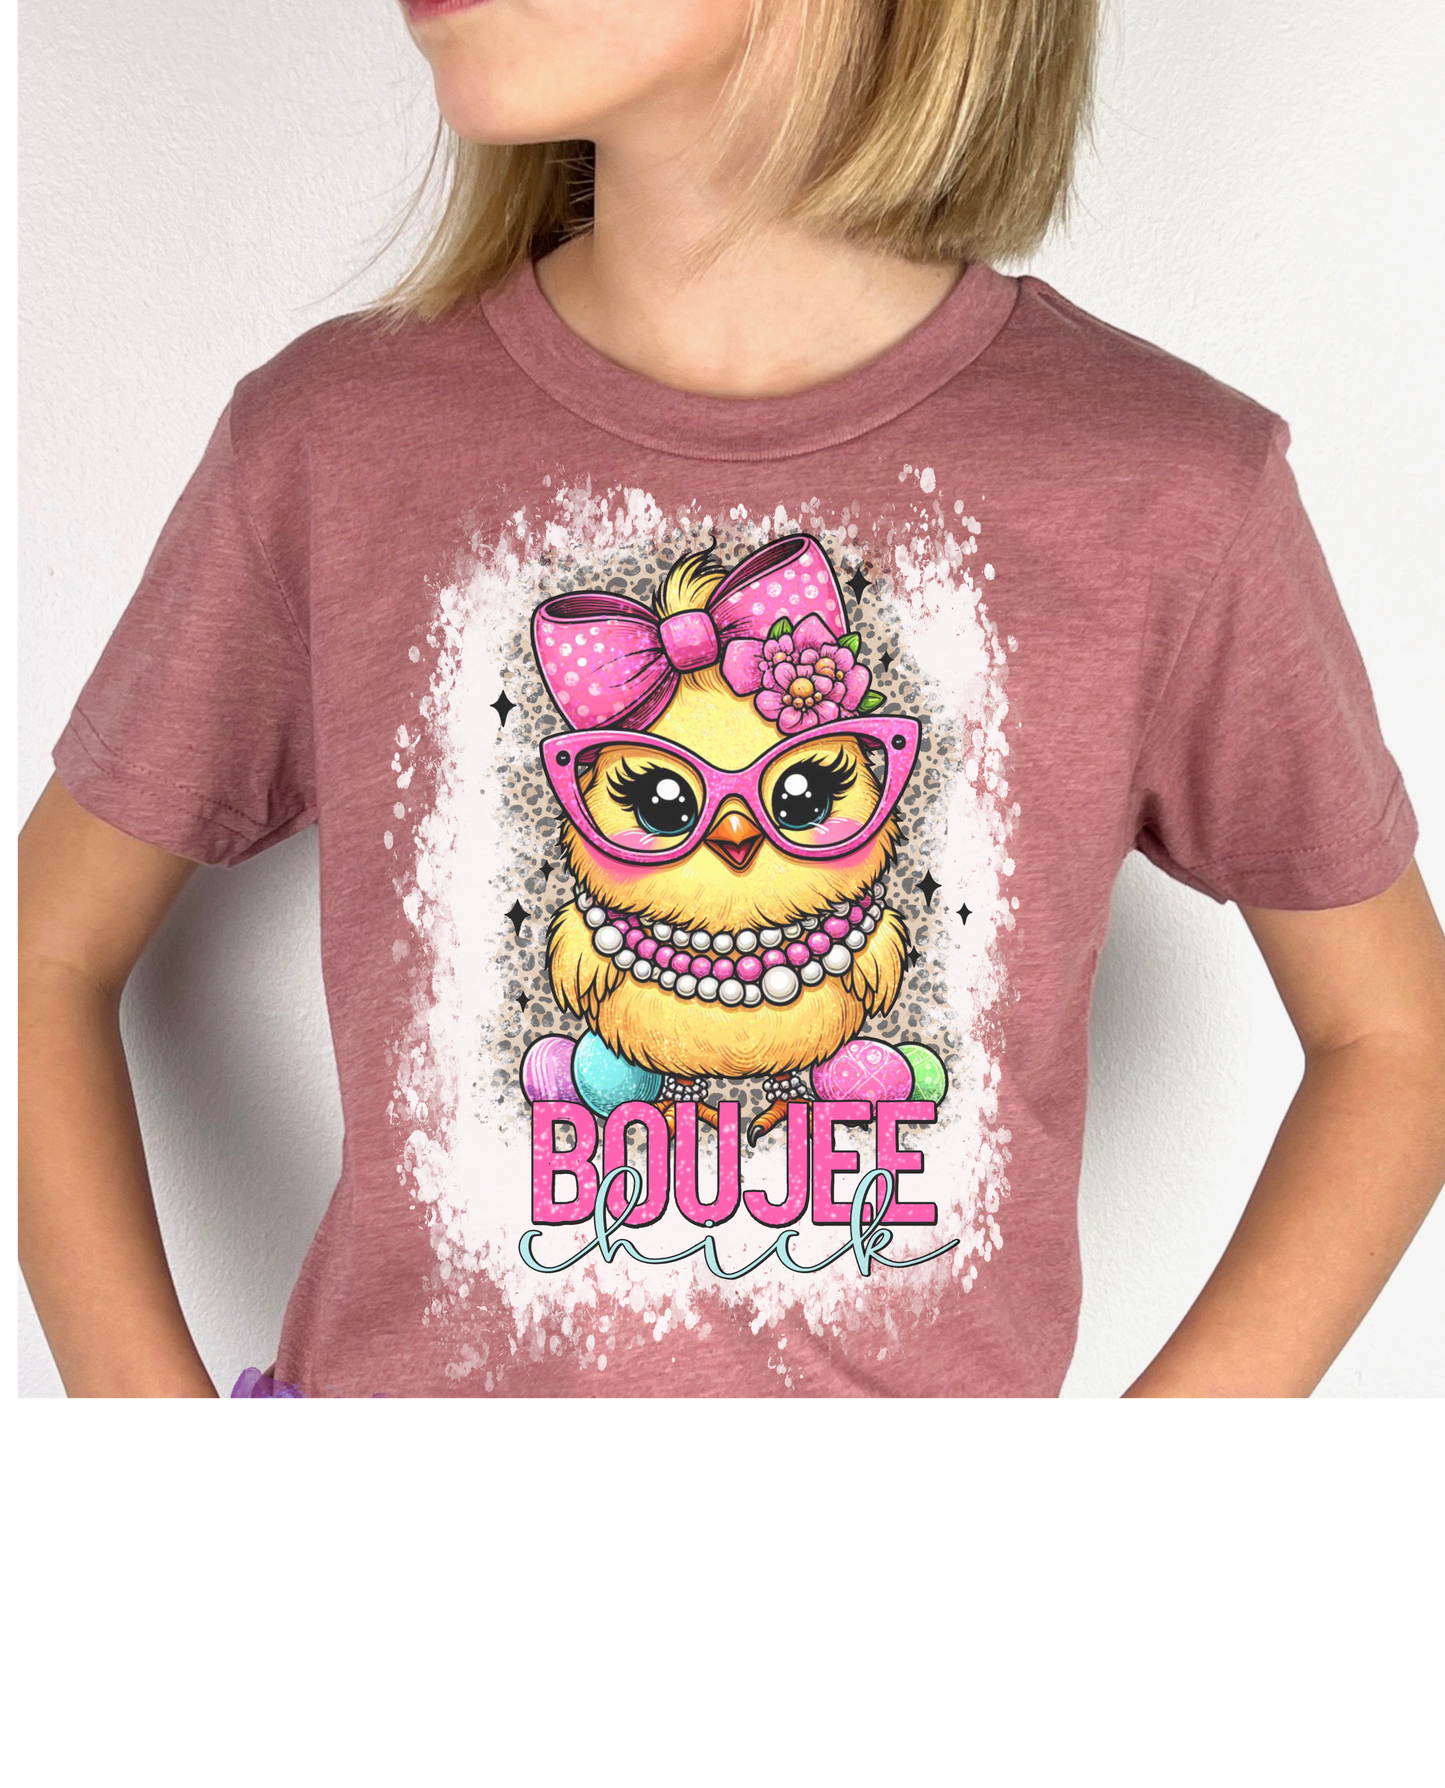 Boujee Chick Shirt